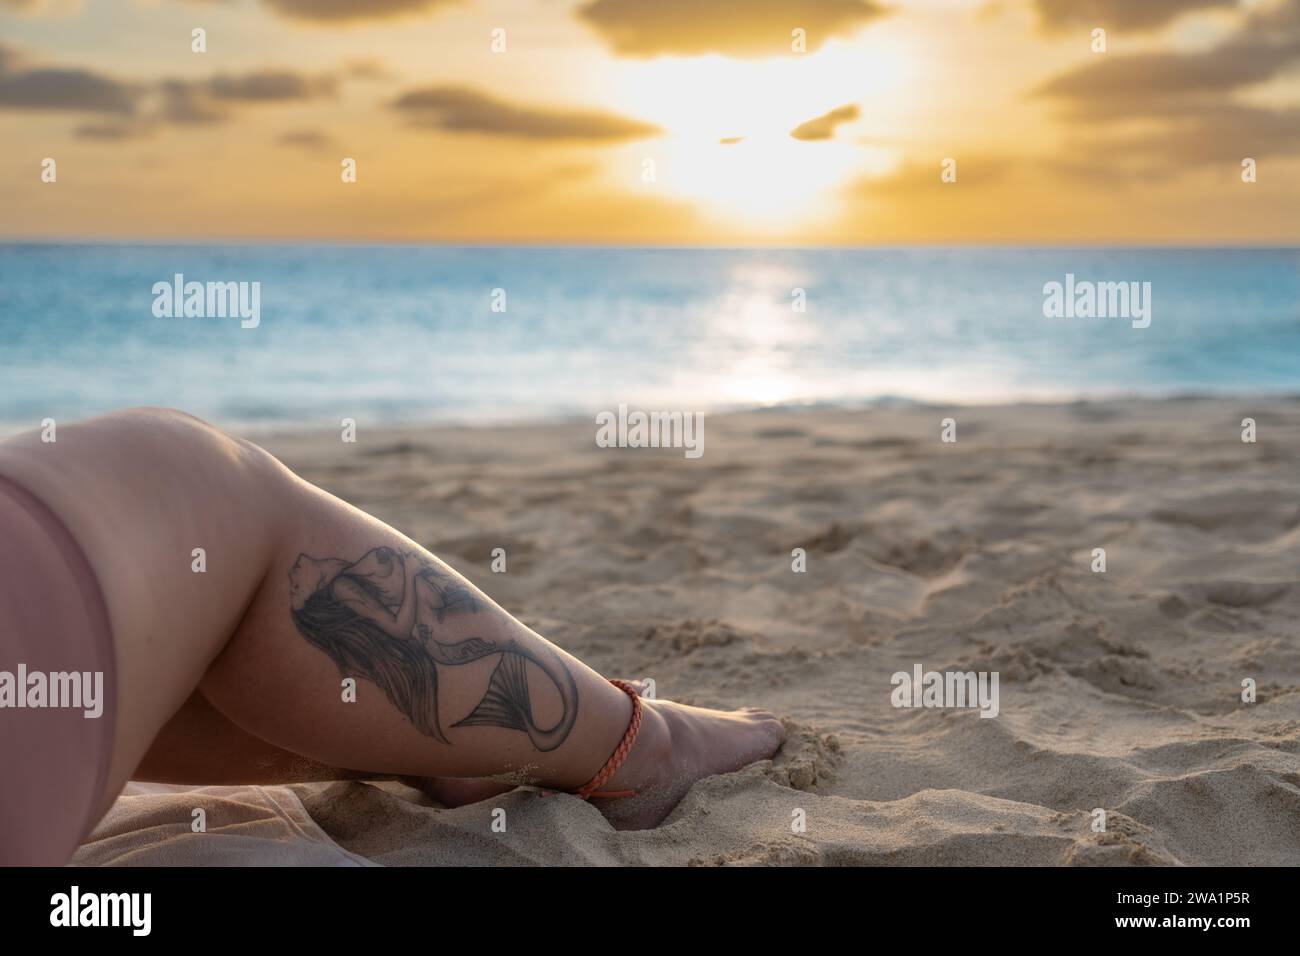 Tatouage de sirène sur une jambe de femme, alors que le soleil se couche sur la couleur bleue des lueurs de l'océan. Banque D'Images